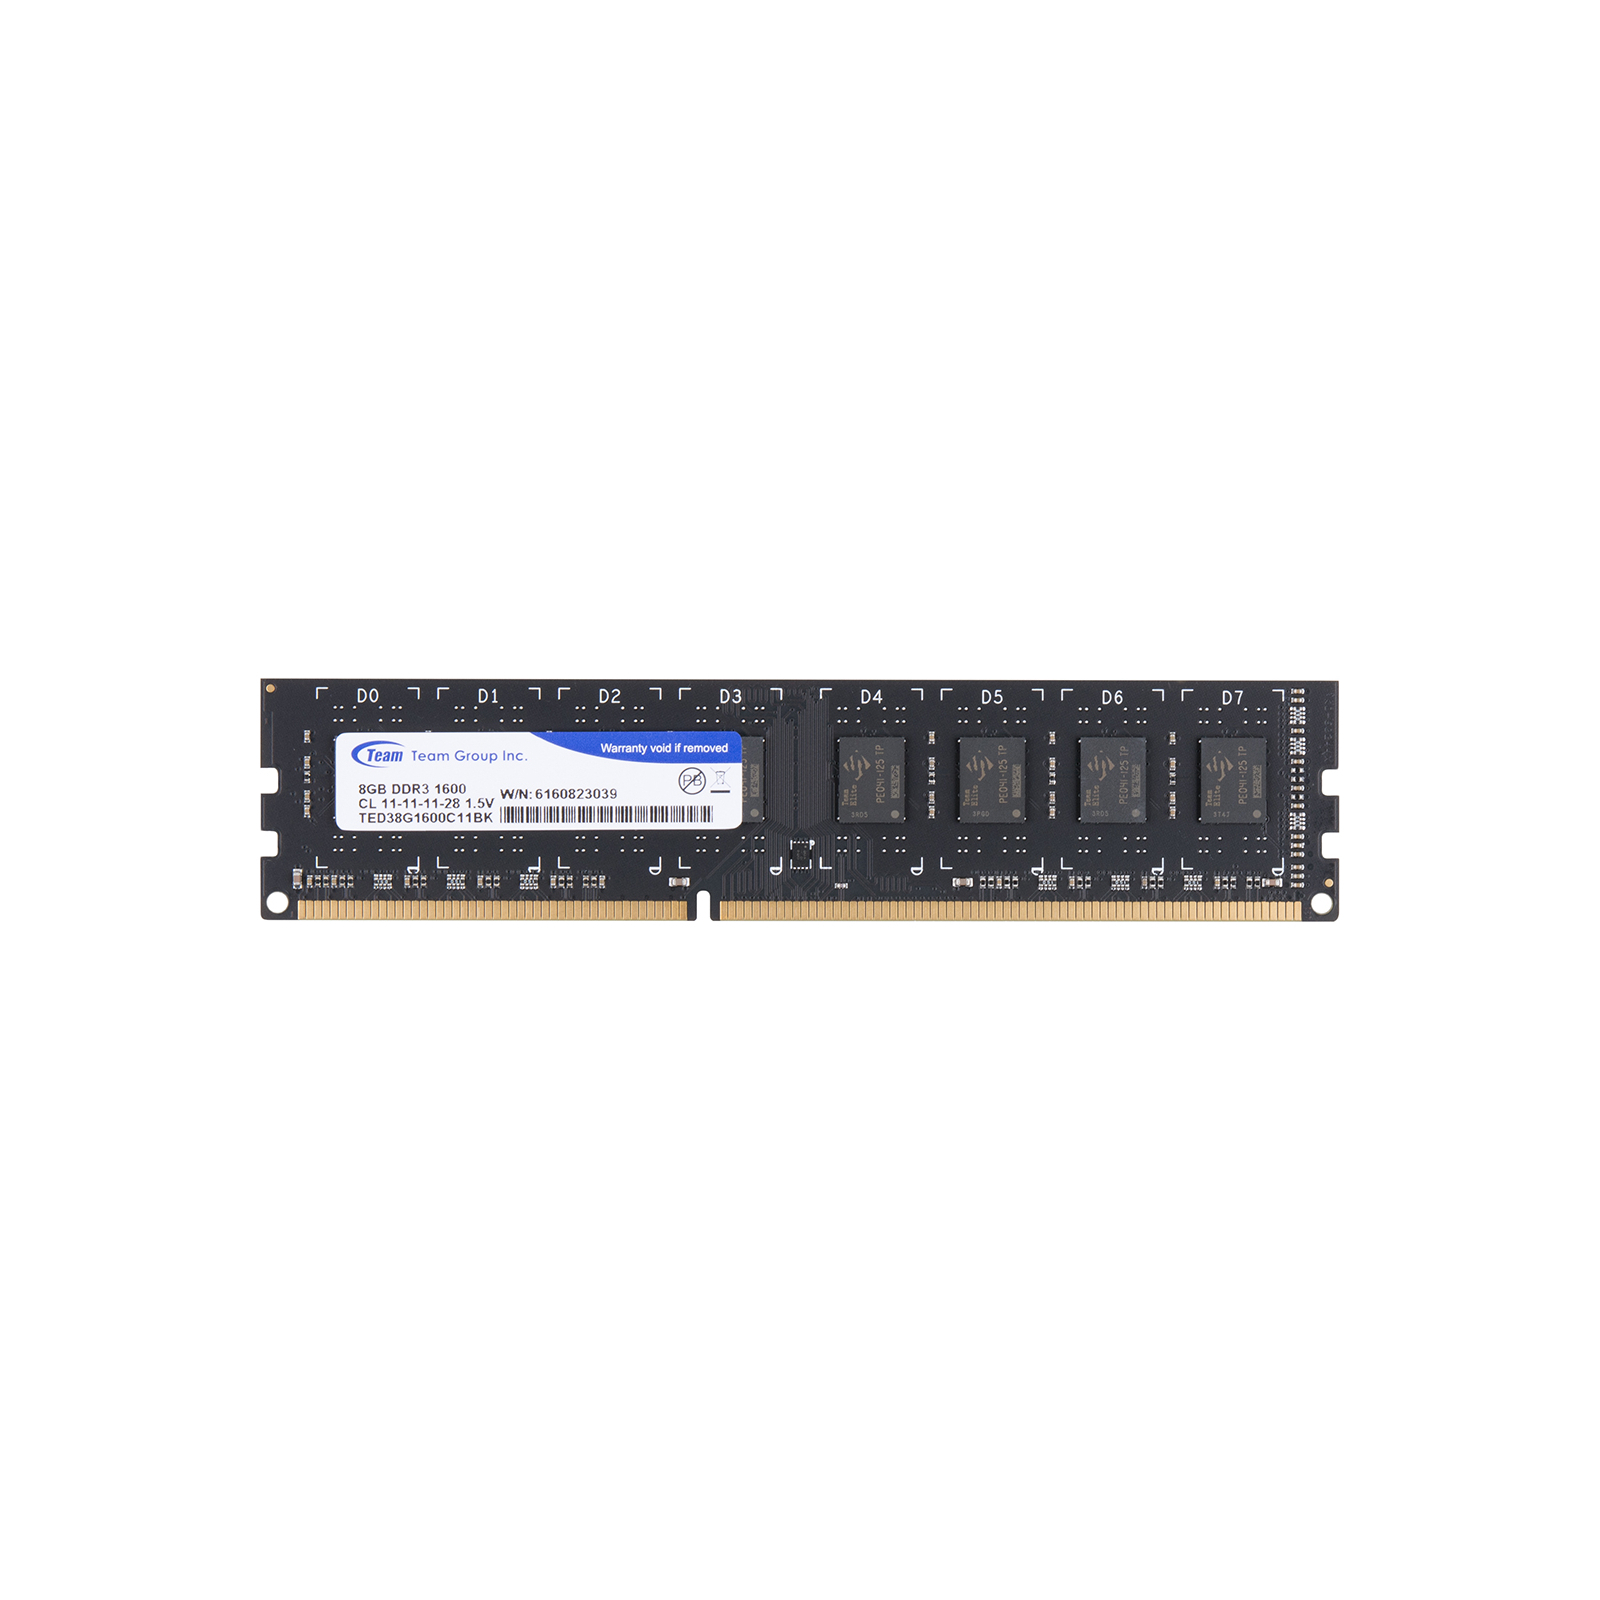 Модуль памяти для компьютера DDR3 4GB 1600 MHz Team (TED34G1600C1101)